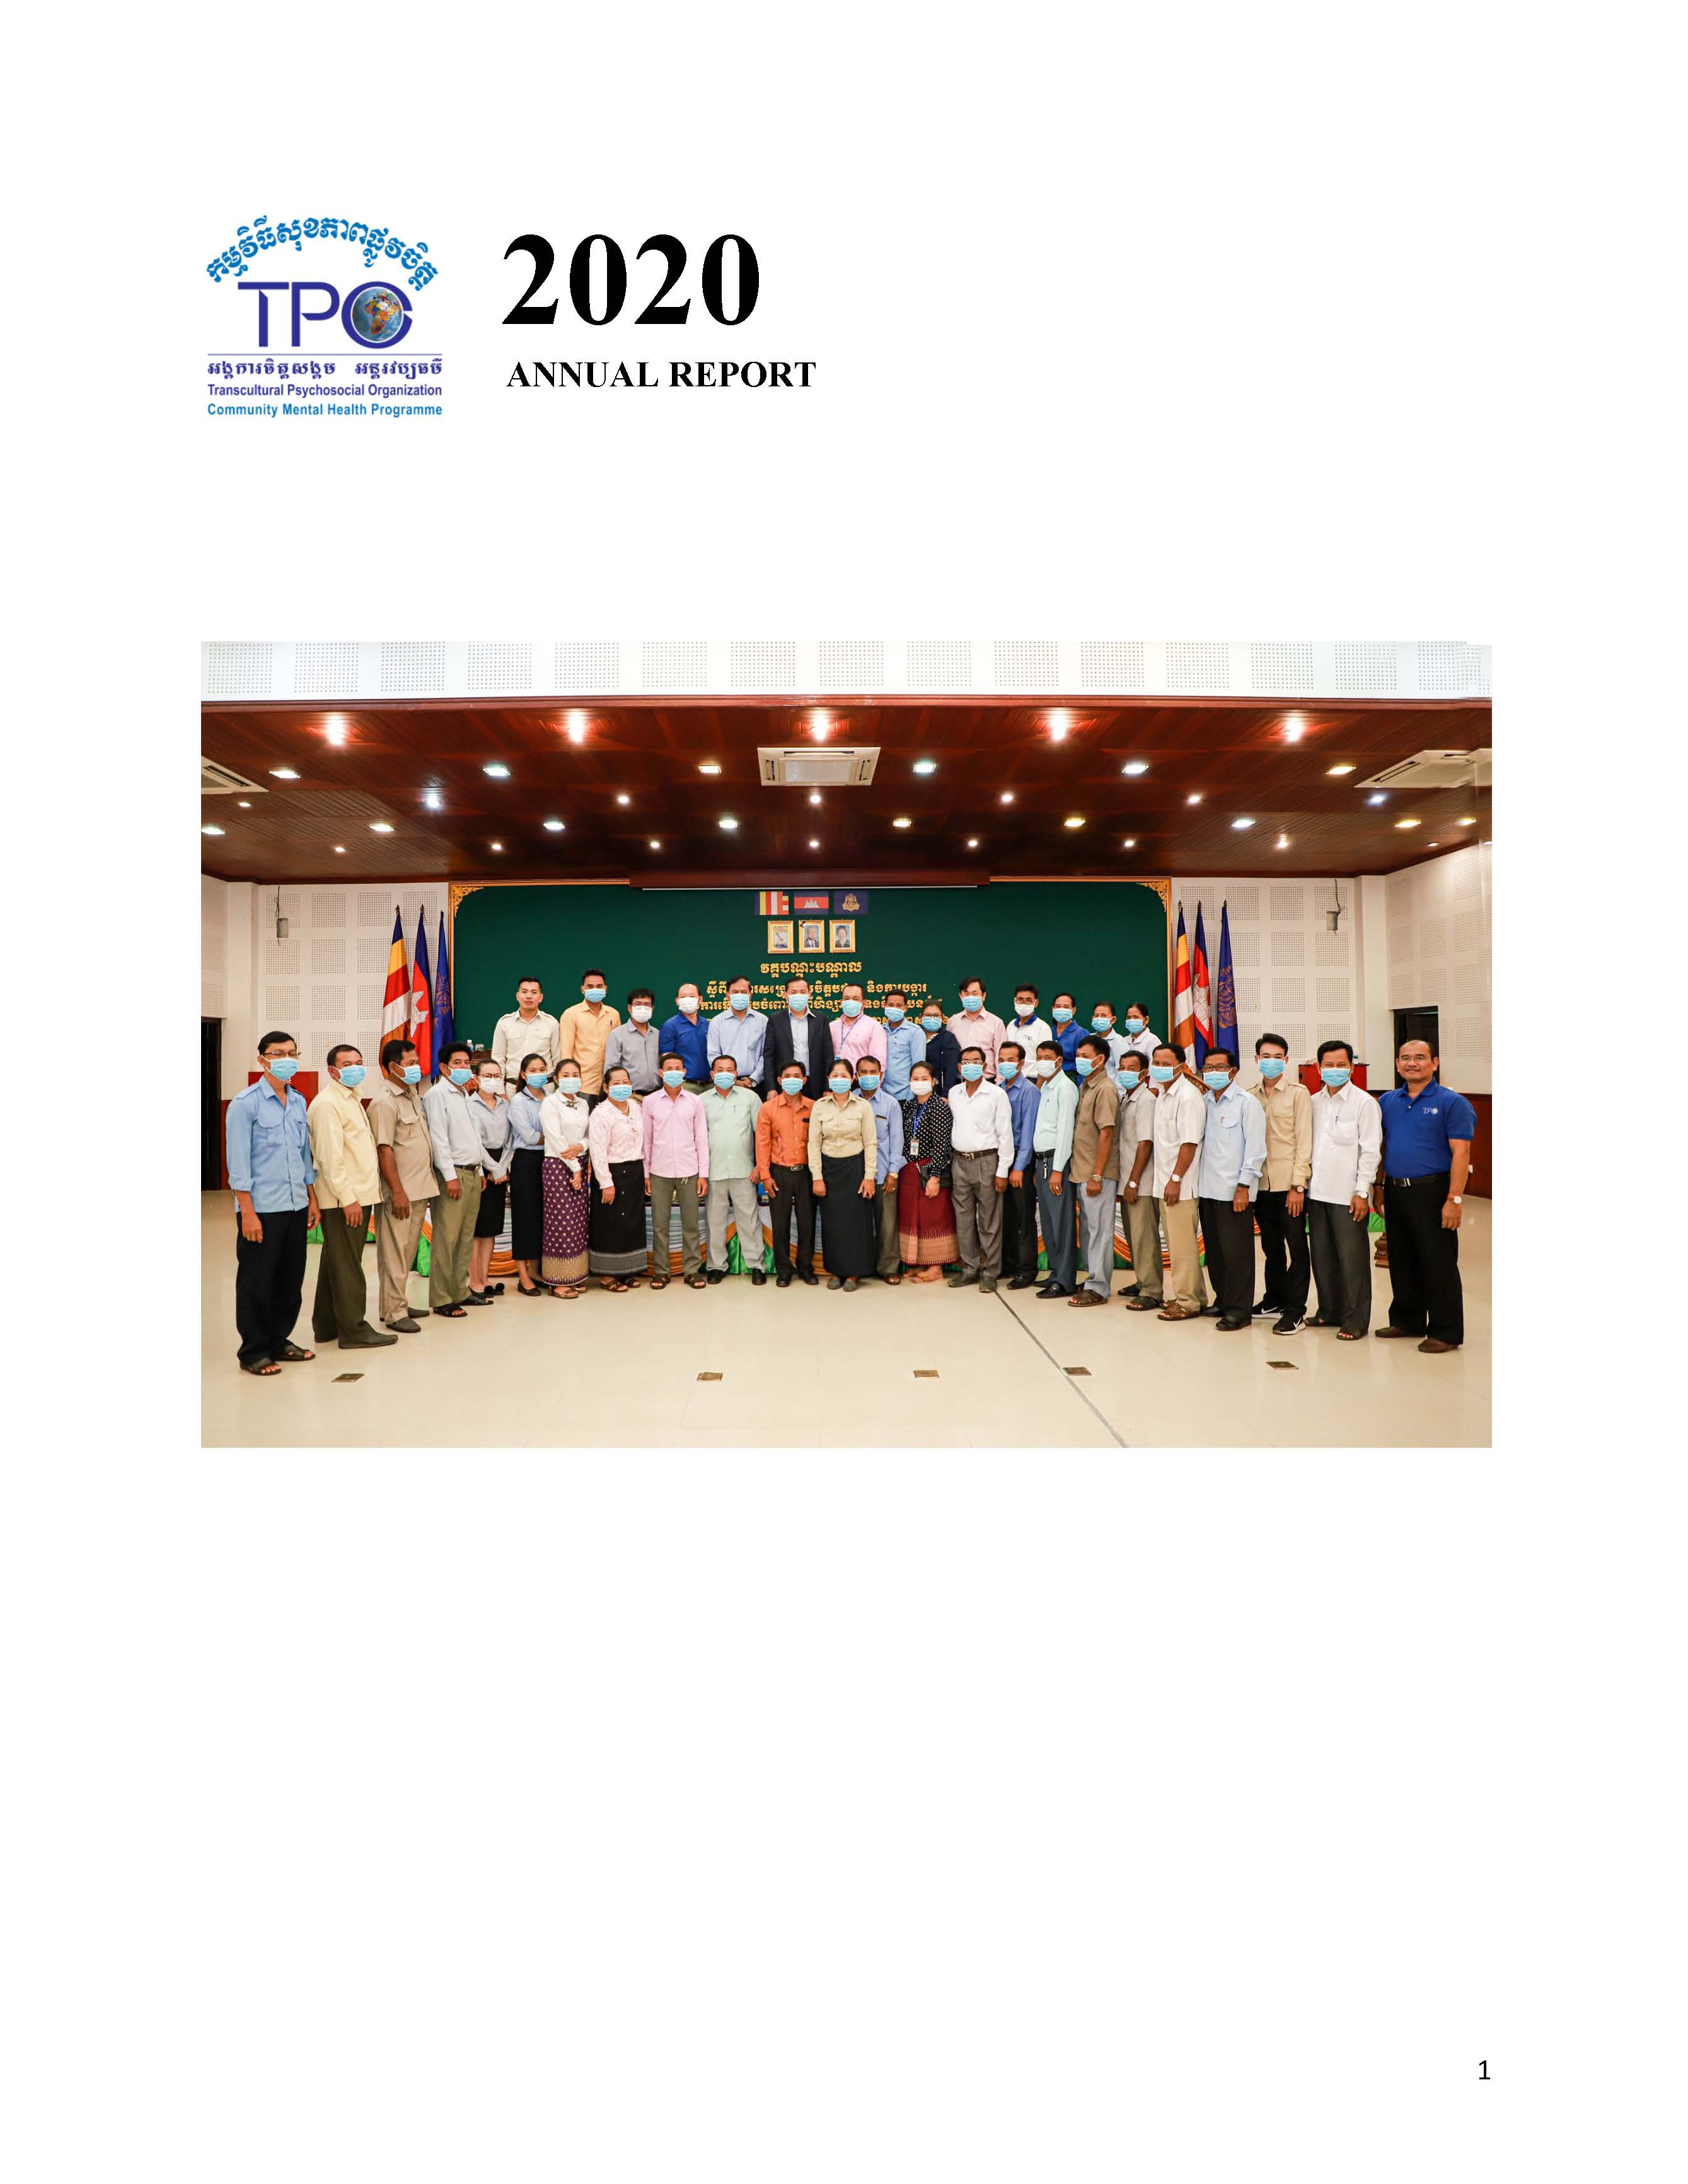 TPO Annual Report 2020